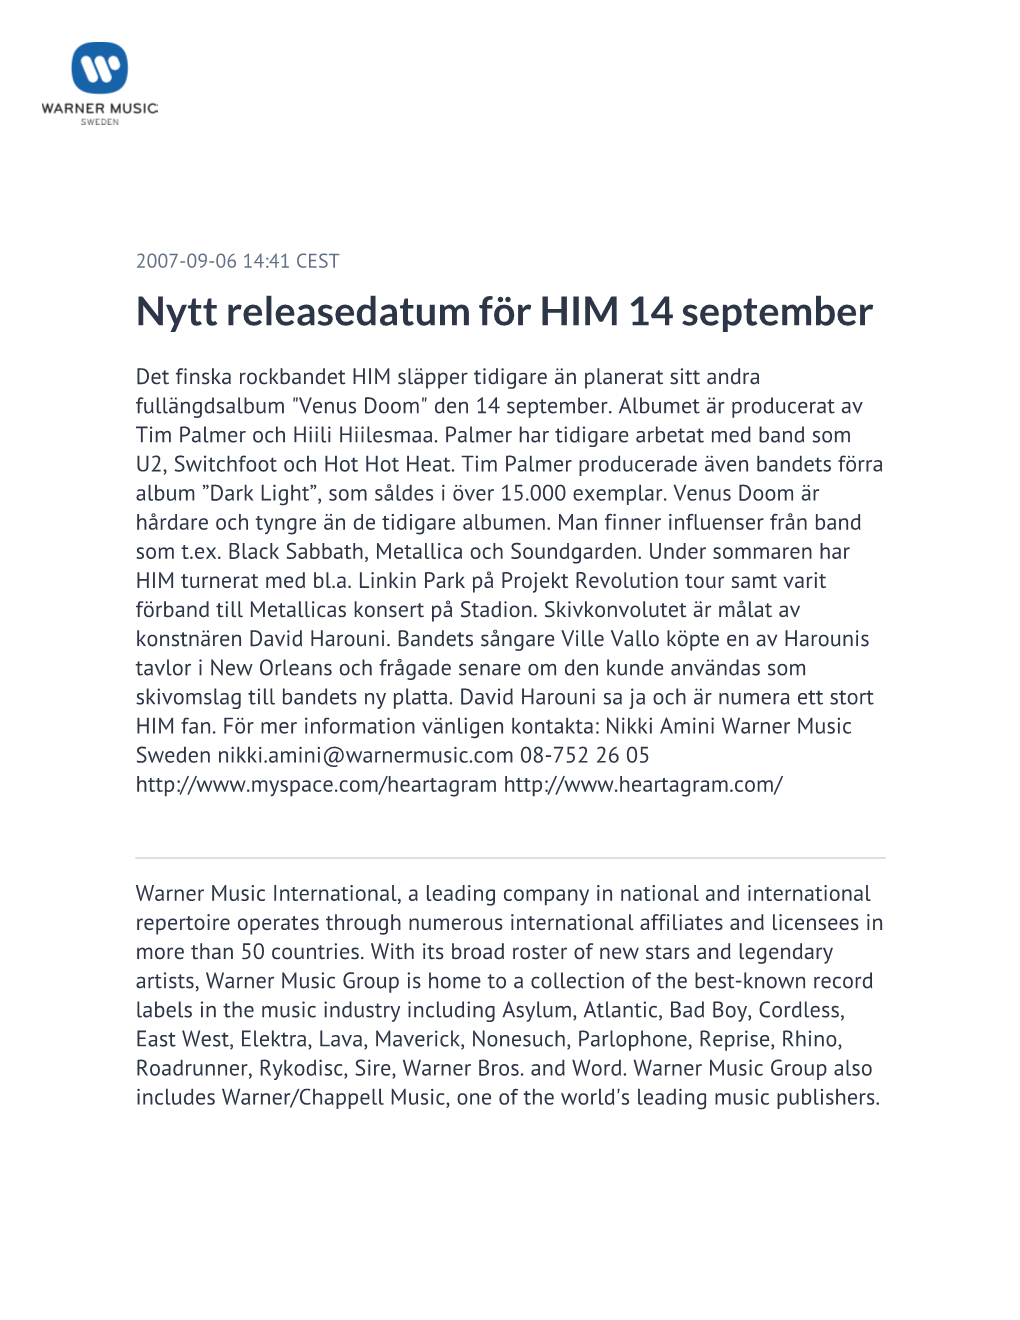 Nytt Releasedatum För HIM 14 September